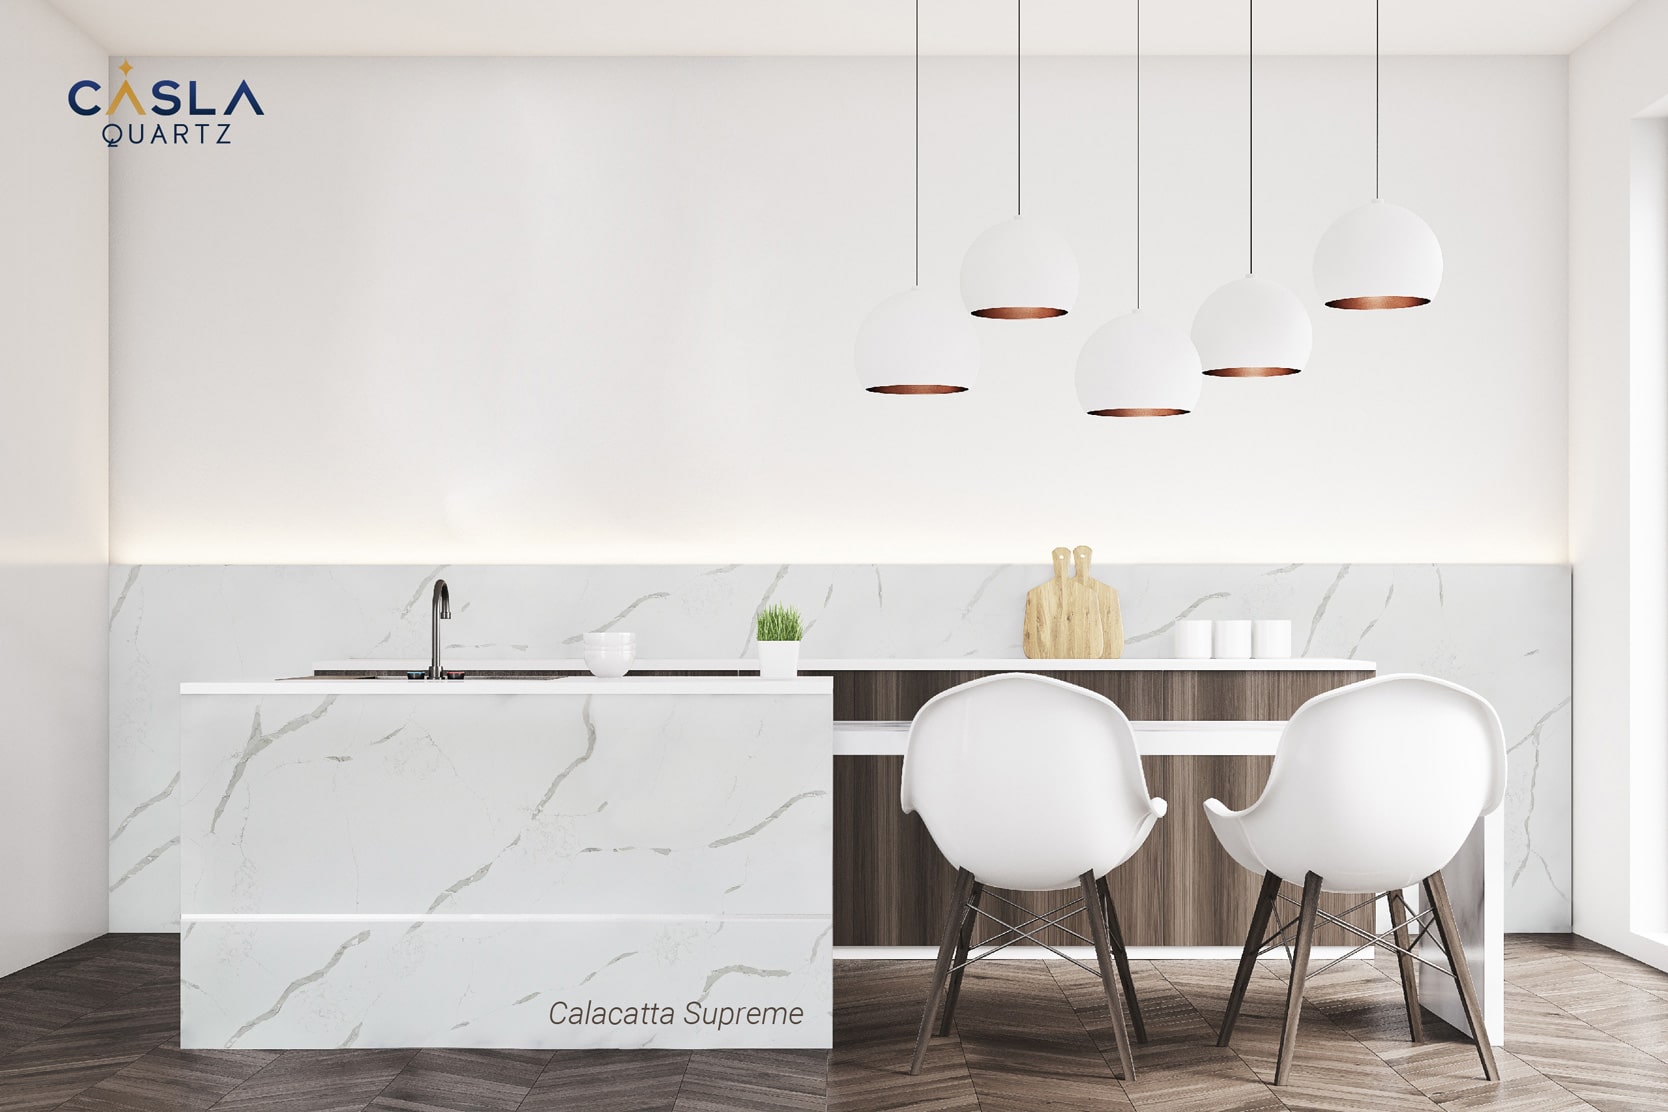 Top 10 mẫu đá ốp bếp trắng cao cấp, đẹp nhất hiện nay: Calacatta Supreme 